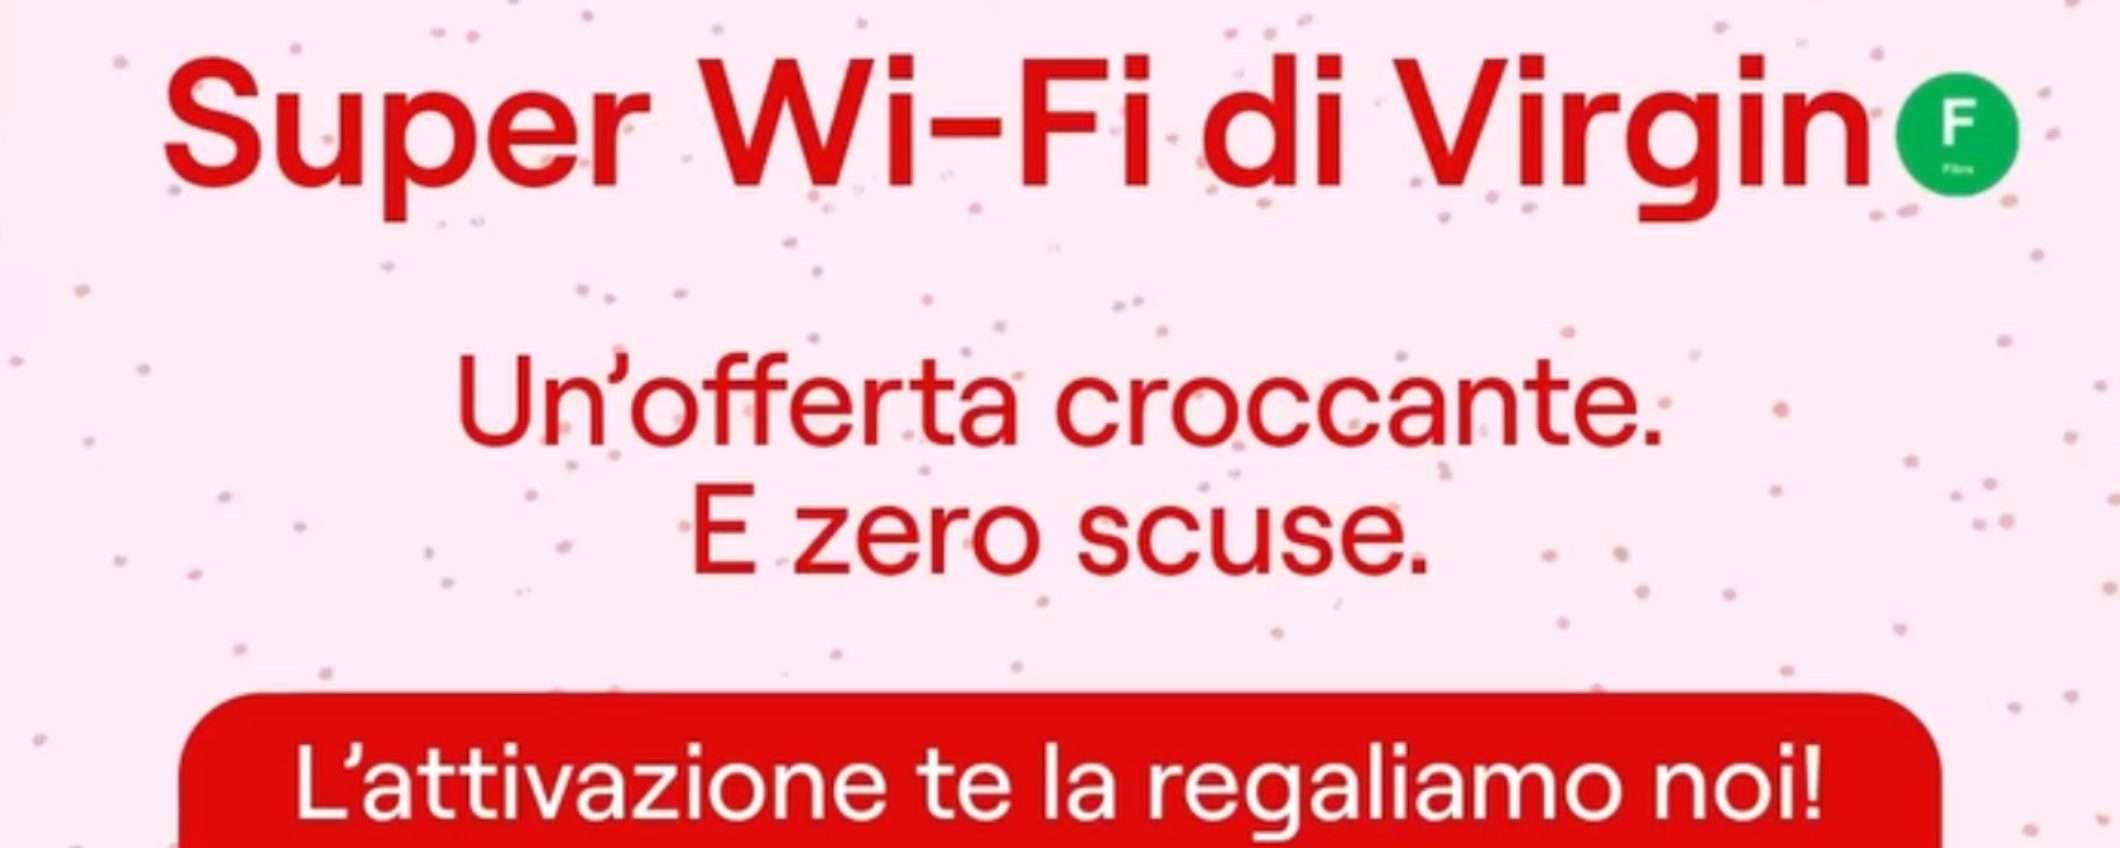 Virgin Super Wi-Fi: PROMO 0 costi di attivazione